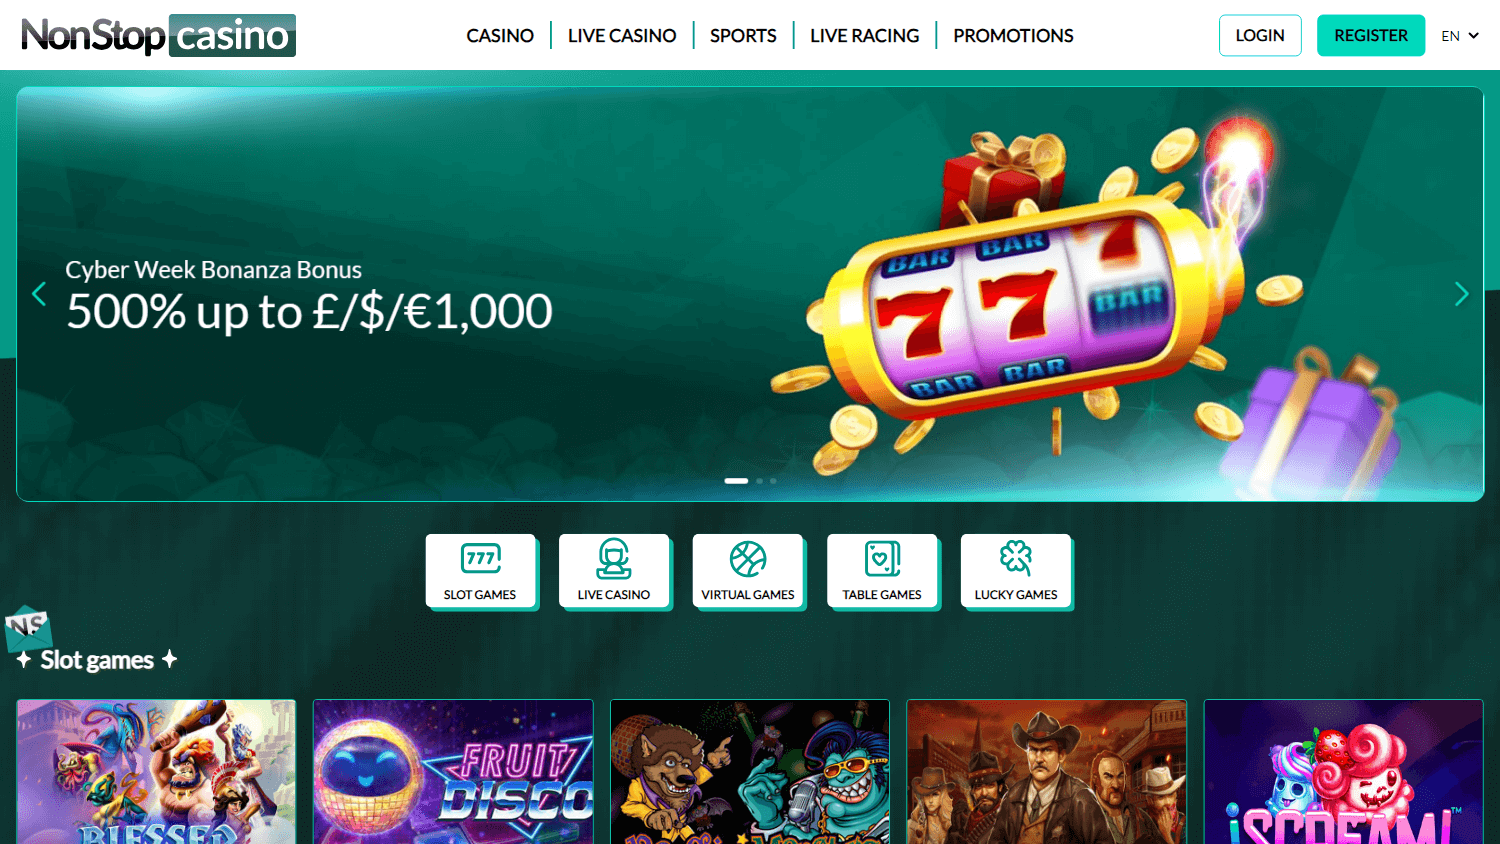 nonstop_casino_homepage_desktop